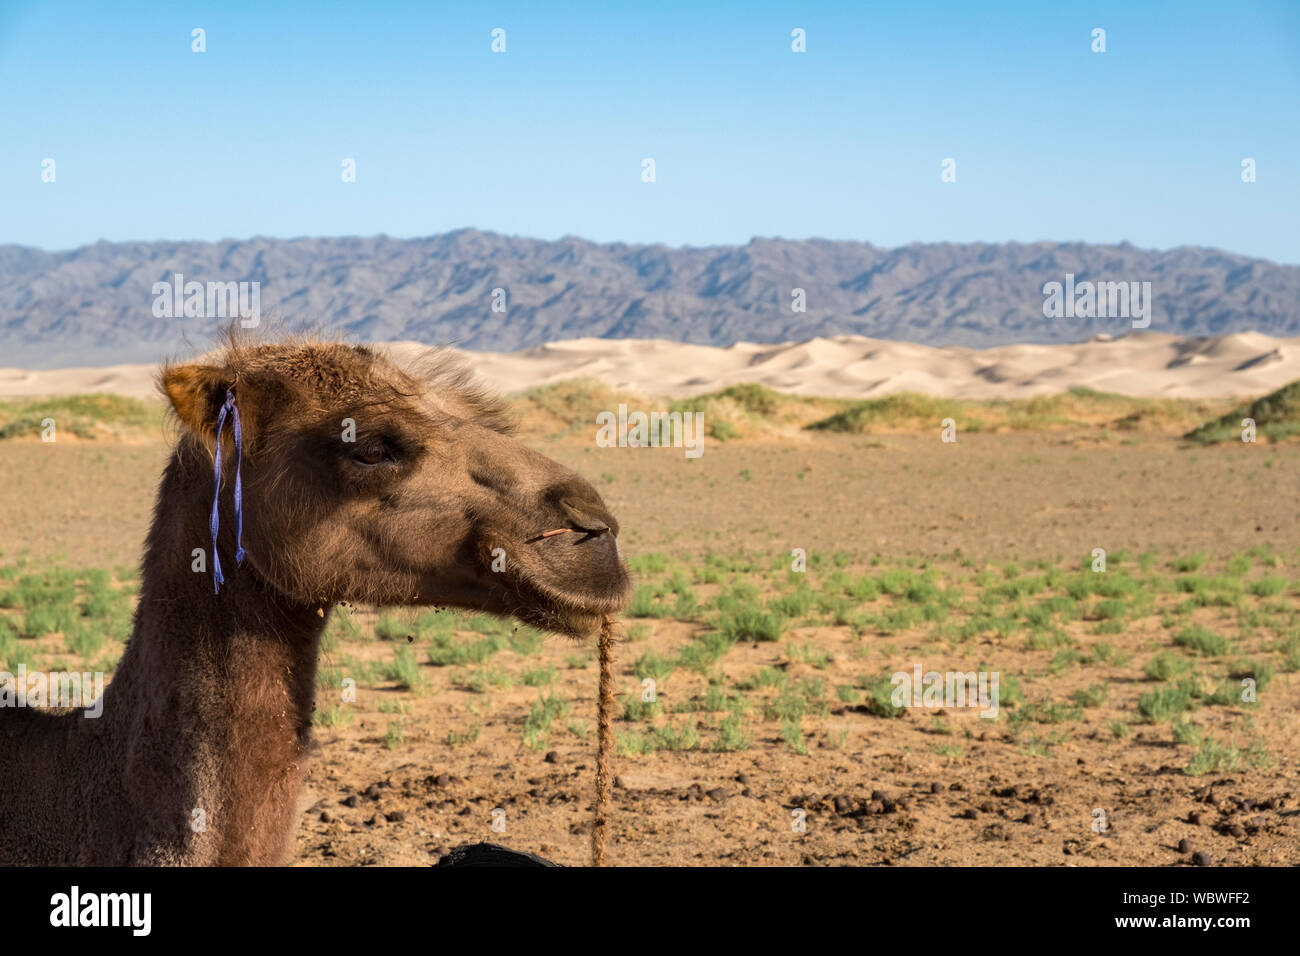 Le chameau de Bactriane est un indigène dans les steppes de l'Asie centrale. Contrairement à l'Arctique et unique, le dromadaire chameau de Bactriane a deux bosses sur i Banque D'Images